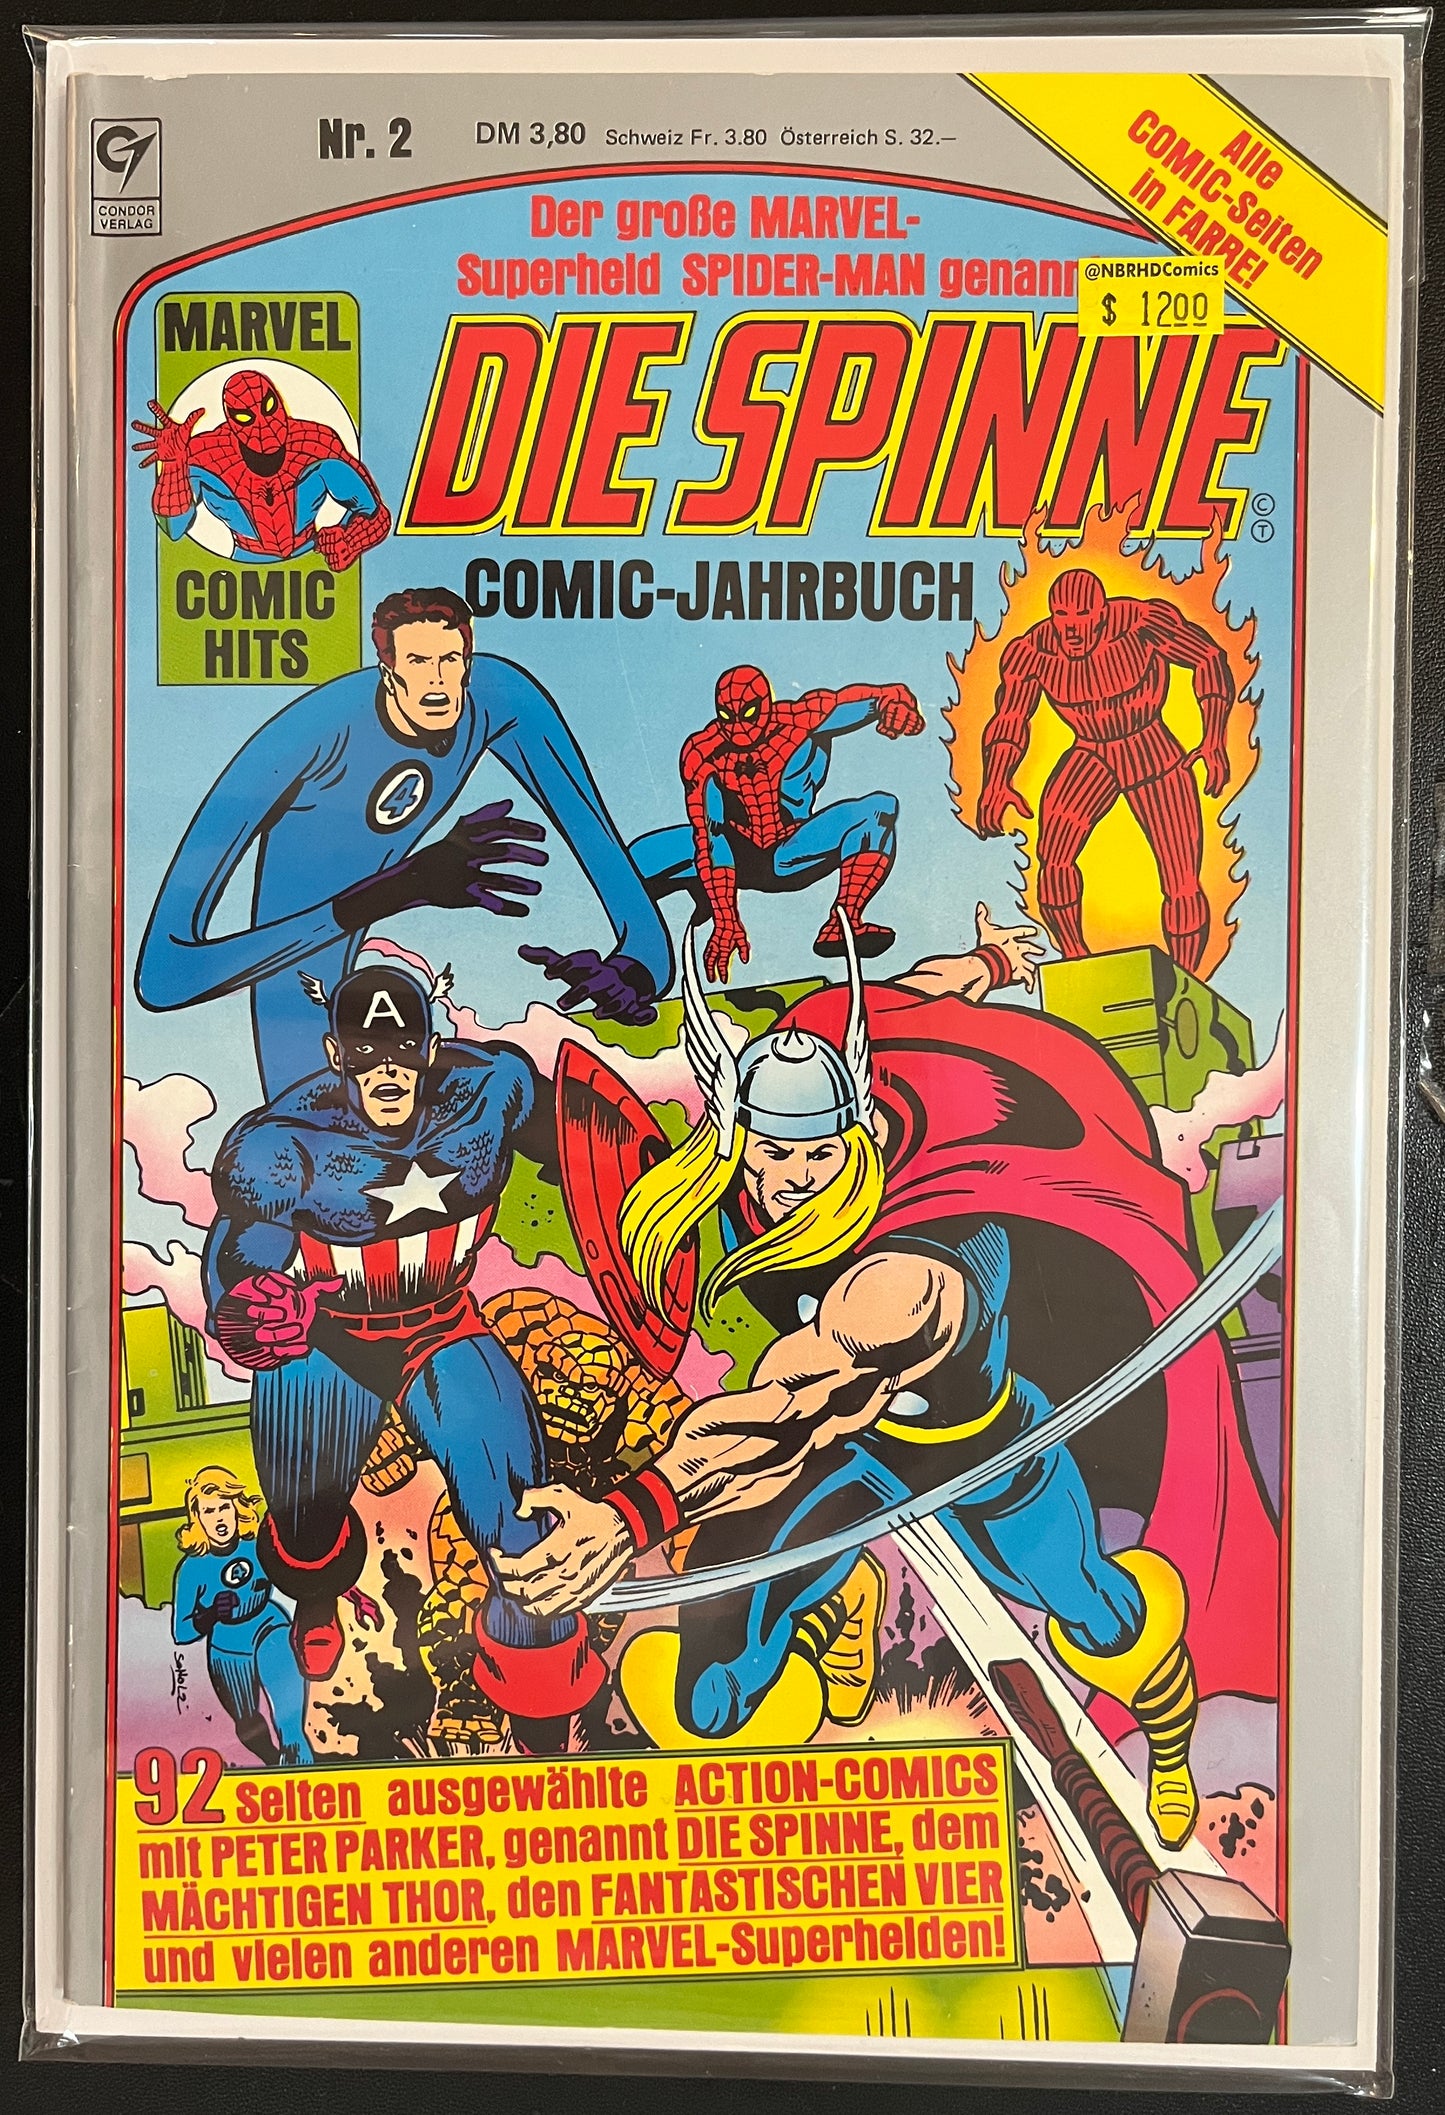 Marvel Comic Hits: Die Spinne #2